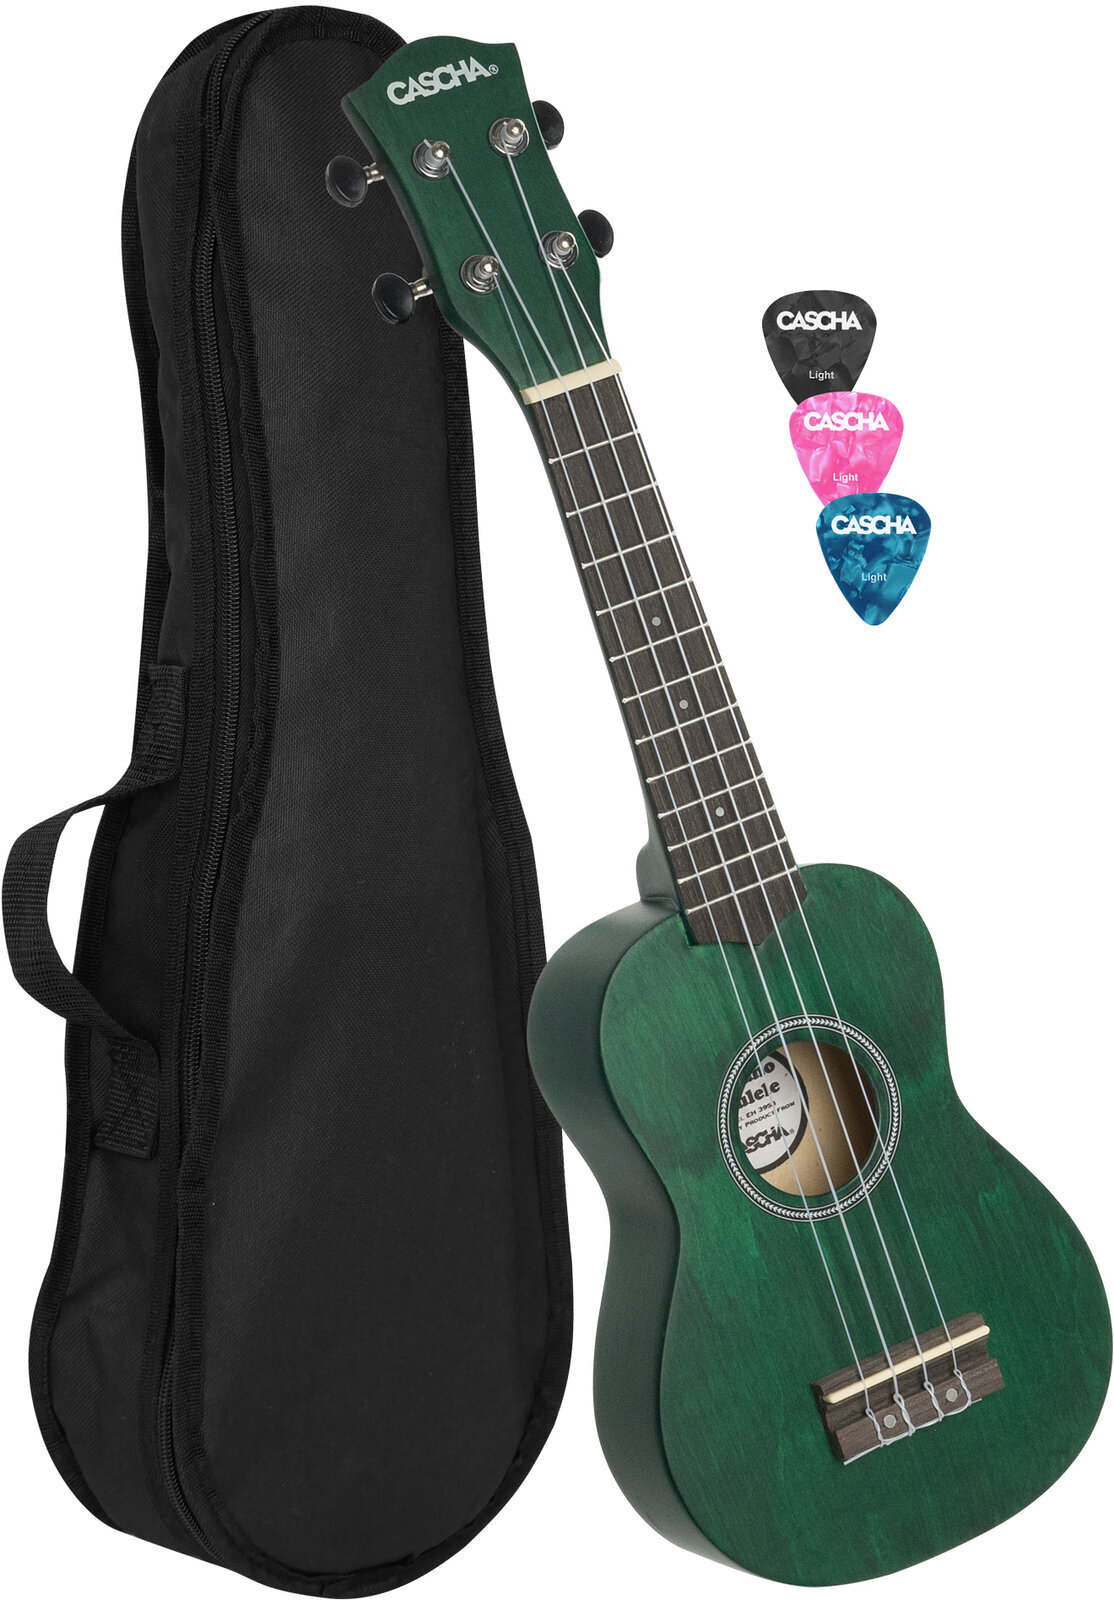 Soprano ukulele Cascha HH 3963 Soprano ukulele Green